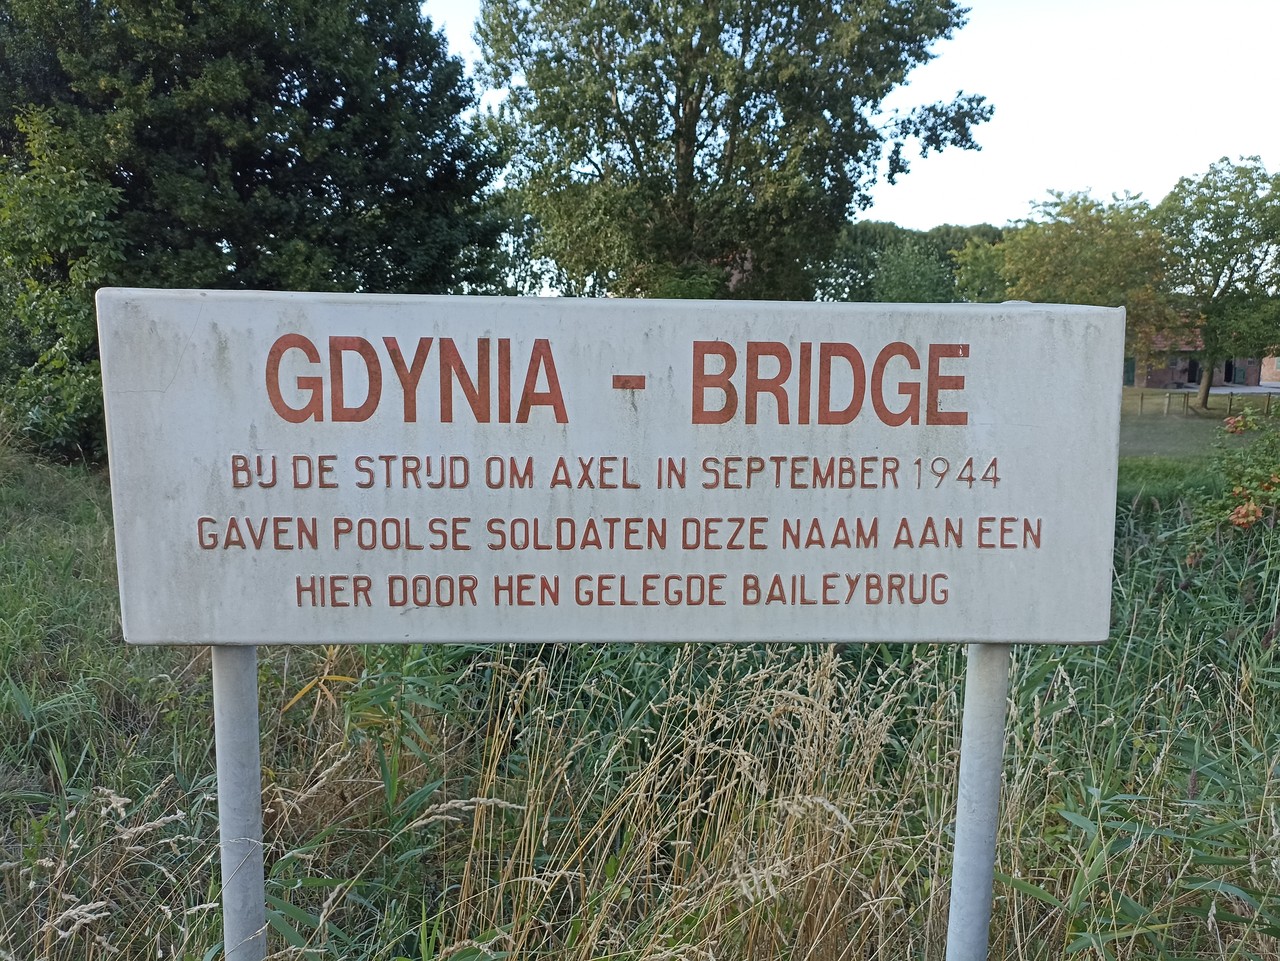 Most Gdyński